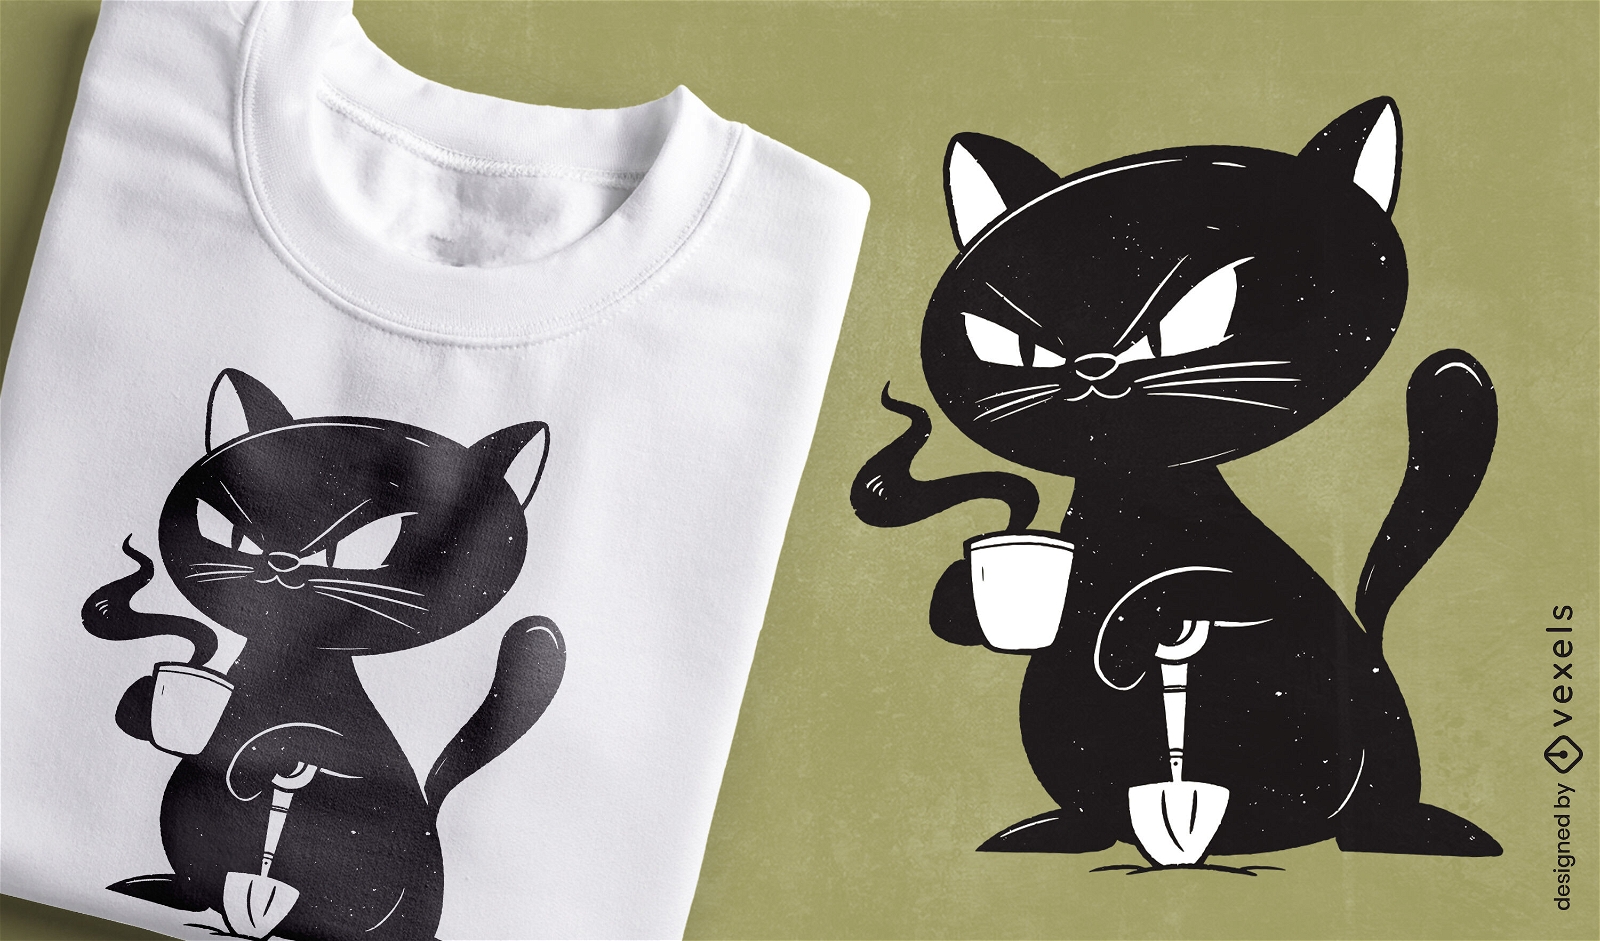 W?tende schwarze Katze, die Kaffee-T-Shirt-Design trinkt